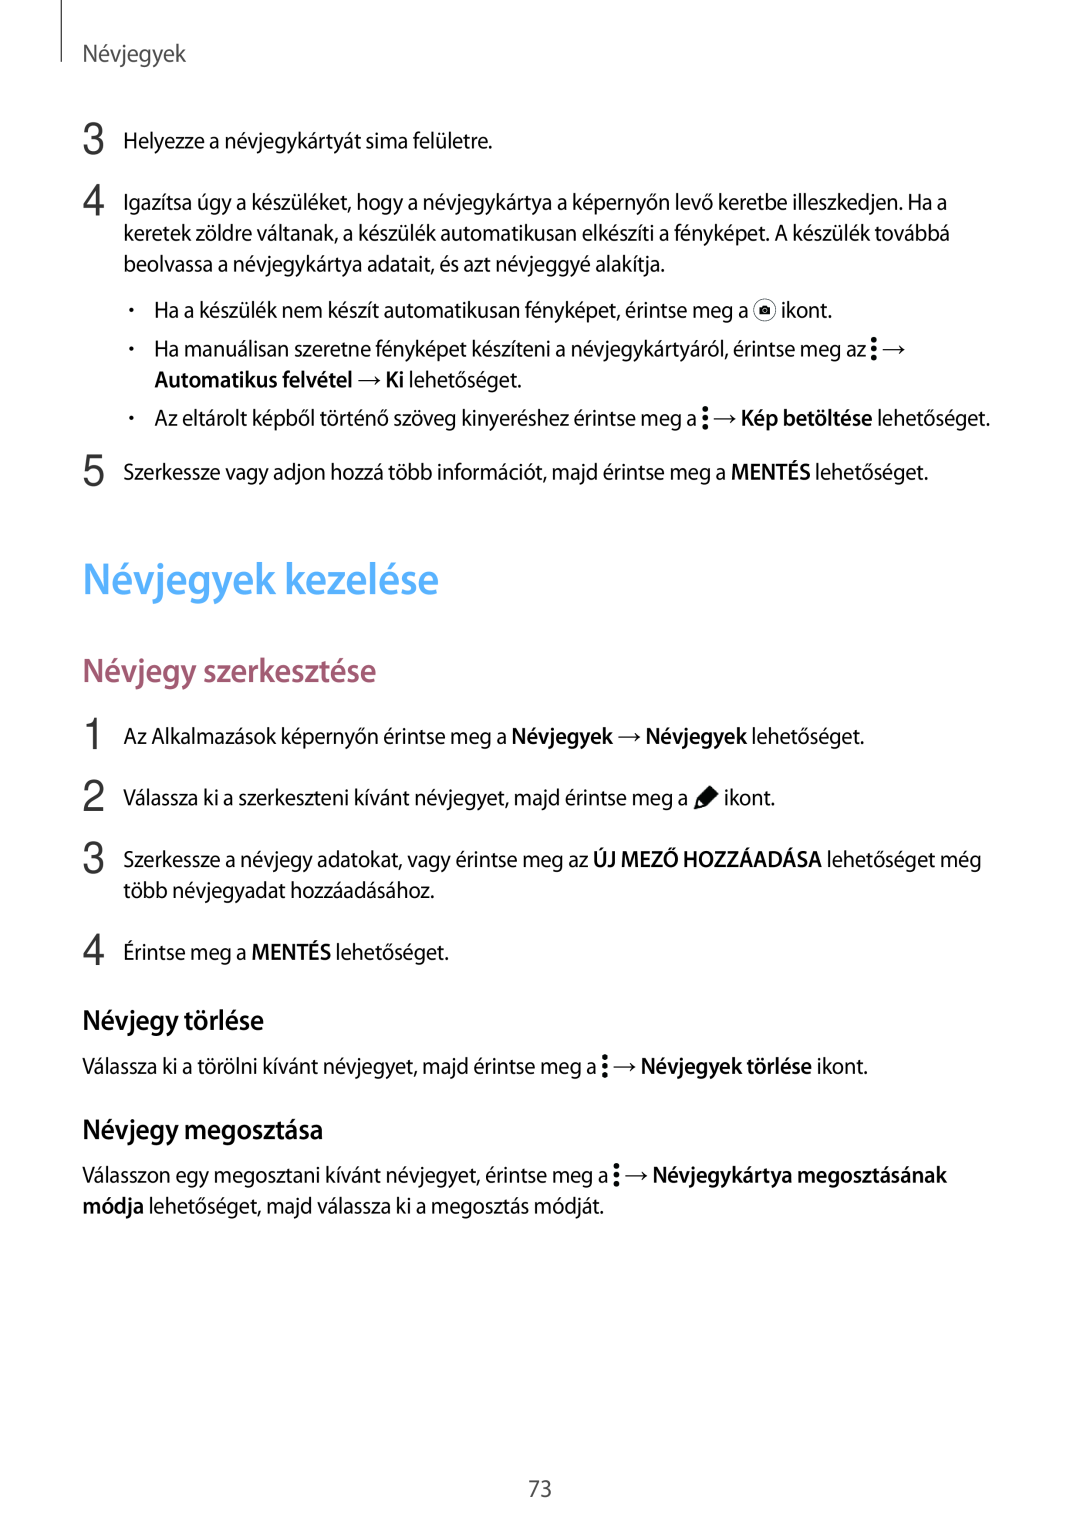 Samsung SM-T705NZWAPAN, SM-T705NZWAATO manual Névjegyek kezelése, Névjegy szerkesztése, Névjegy törlése, Névjegy megosztása 